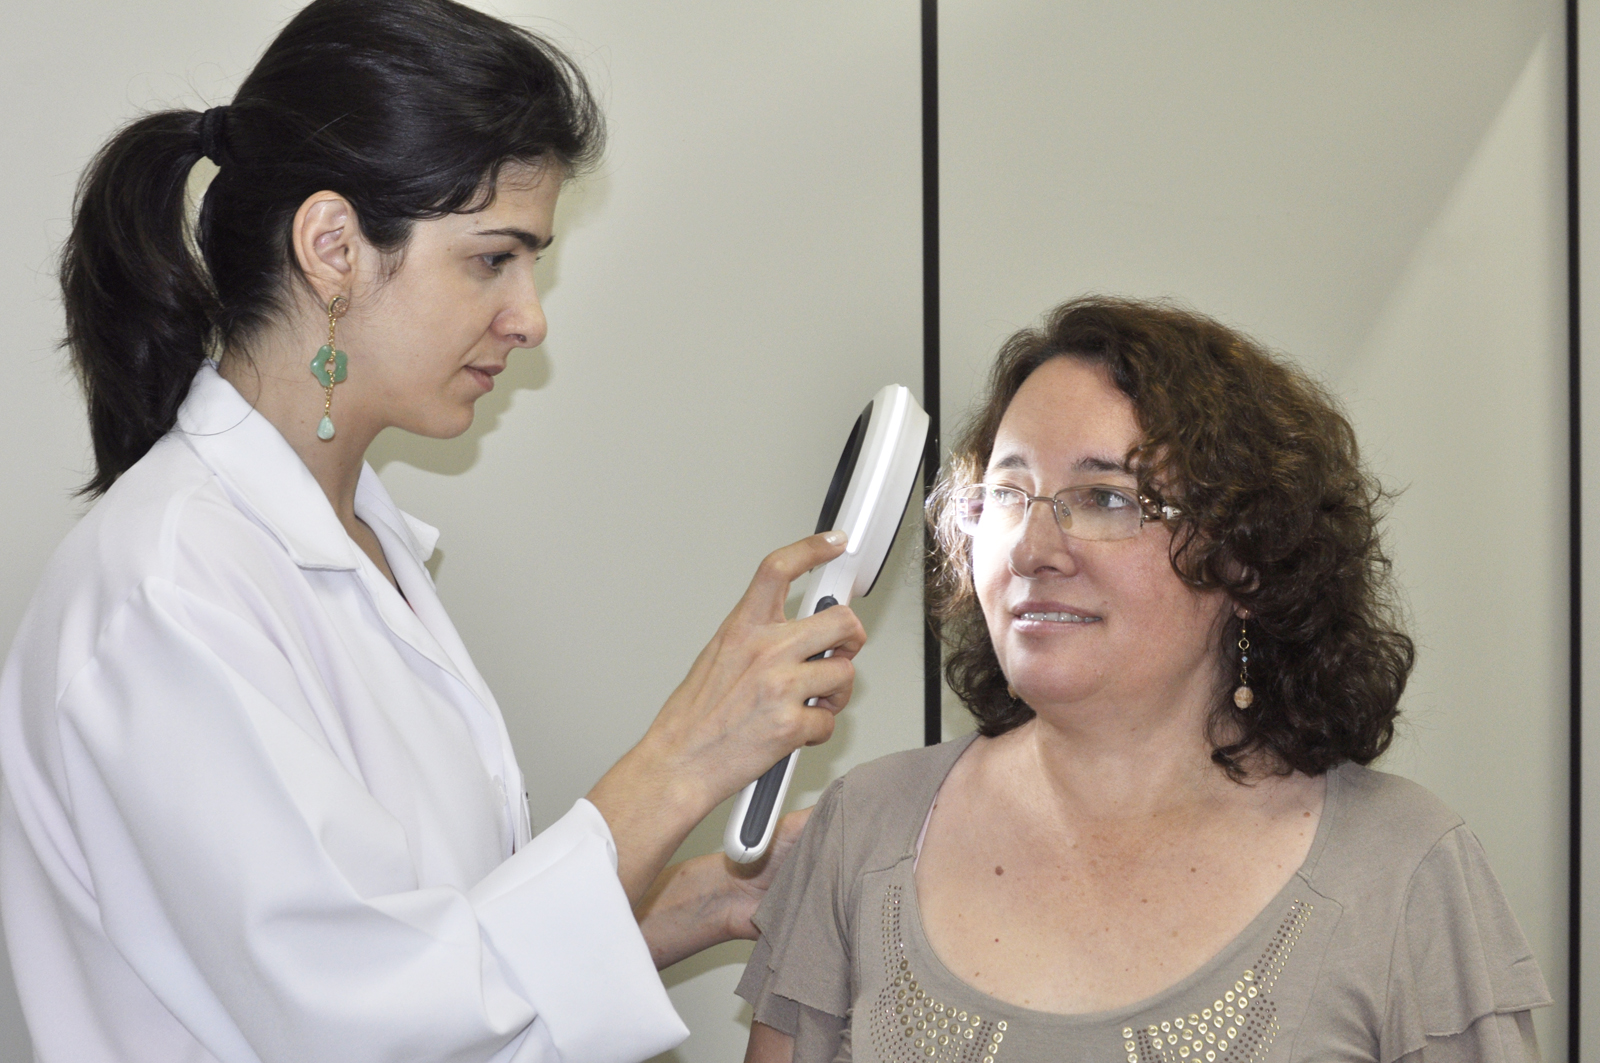 Semana Plena Saúde realiza exames preventivos de câncer de pele 